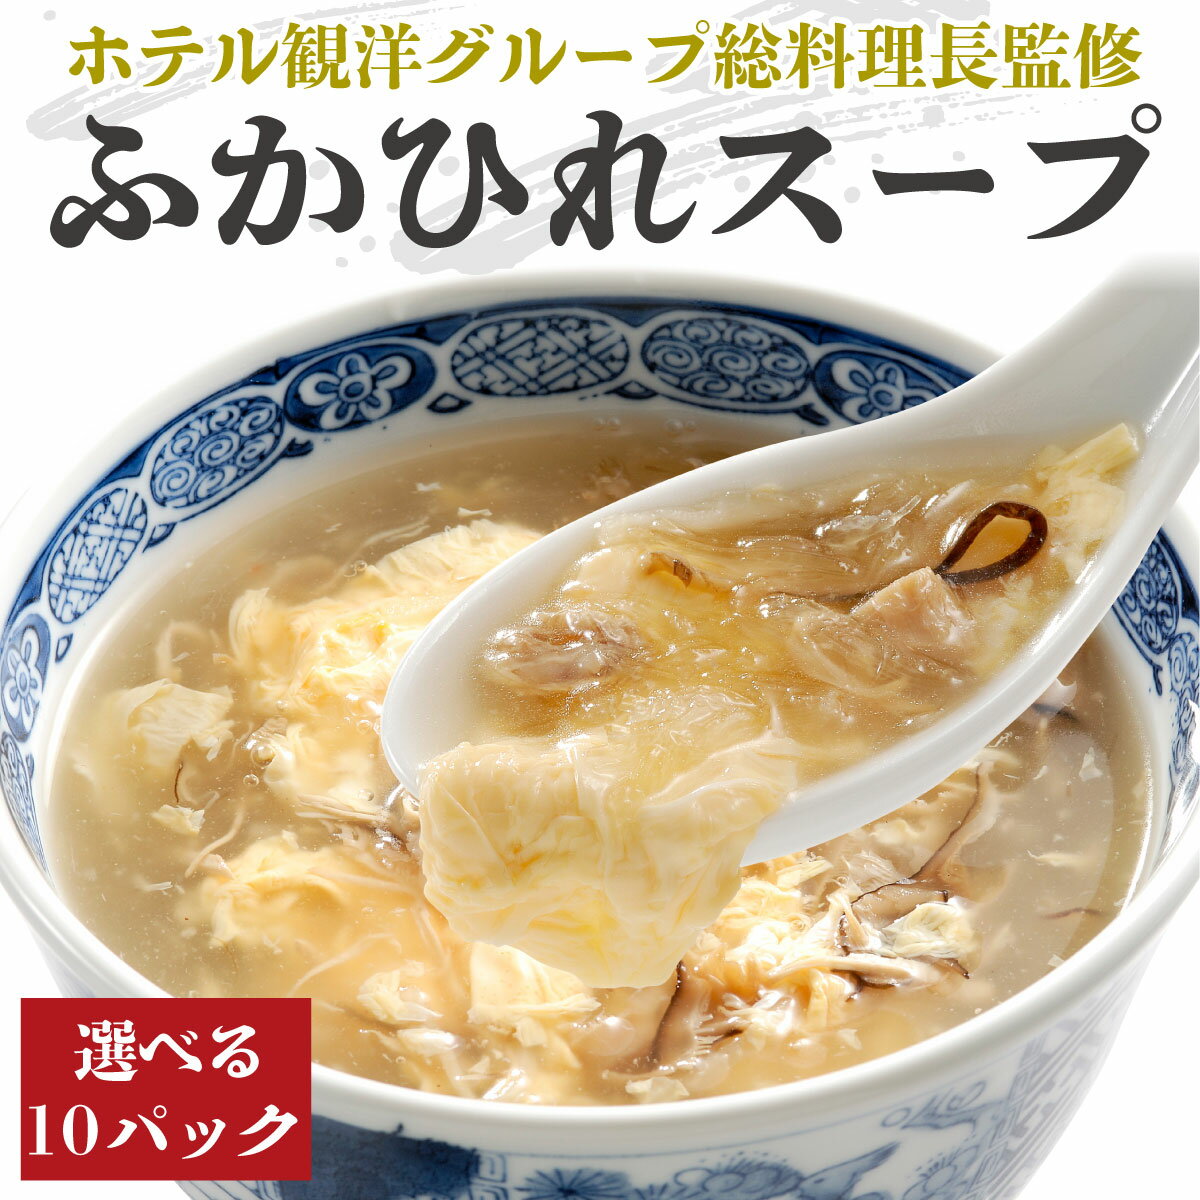 【スーパーセール10%OFF】気仙沼ふかひれ濃縮スープ 選べ